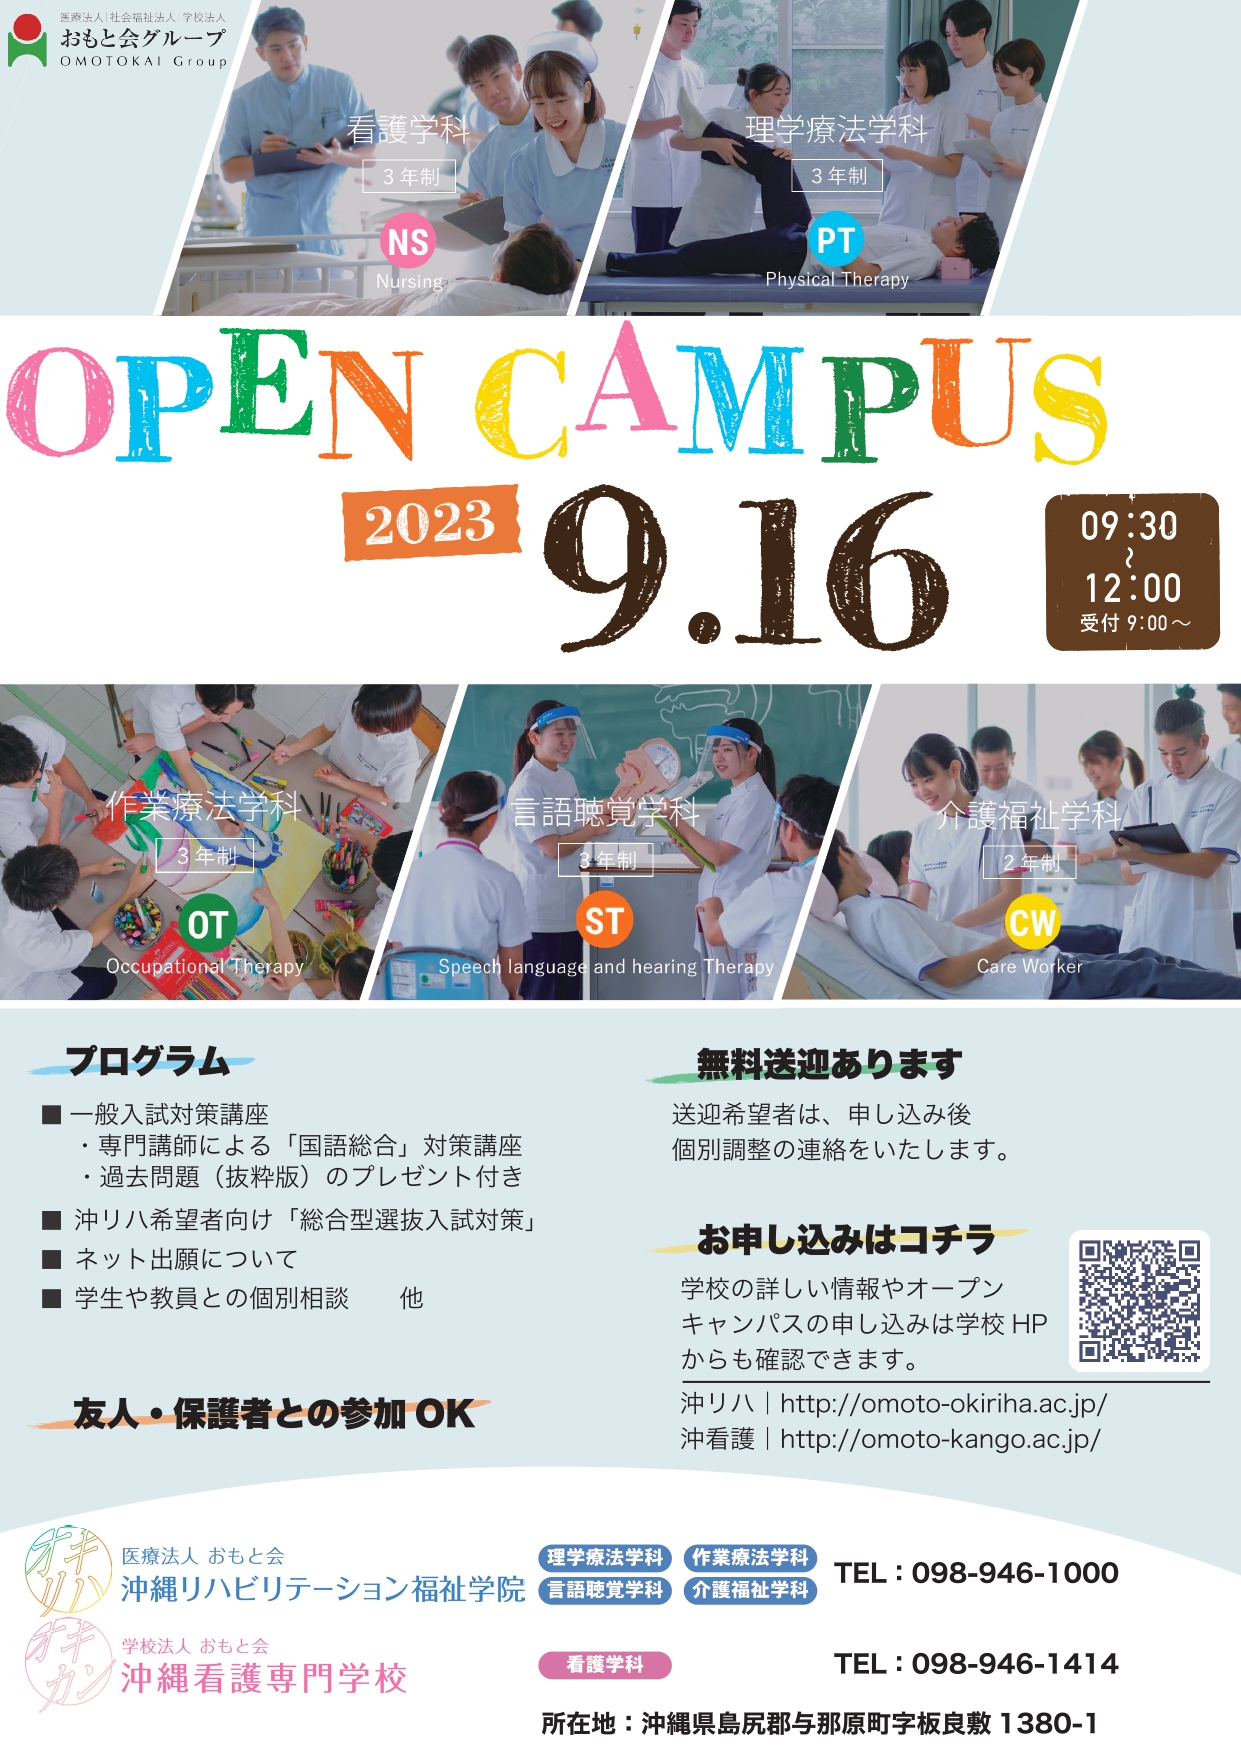 9/16(土)は、一般入試対策(総合型選抜対策も同時開催!!)スペシャルオープンキャンパス